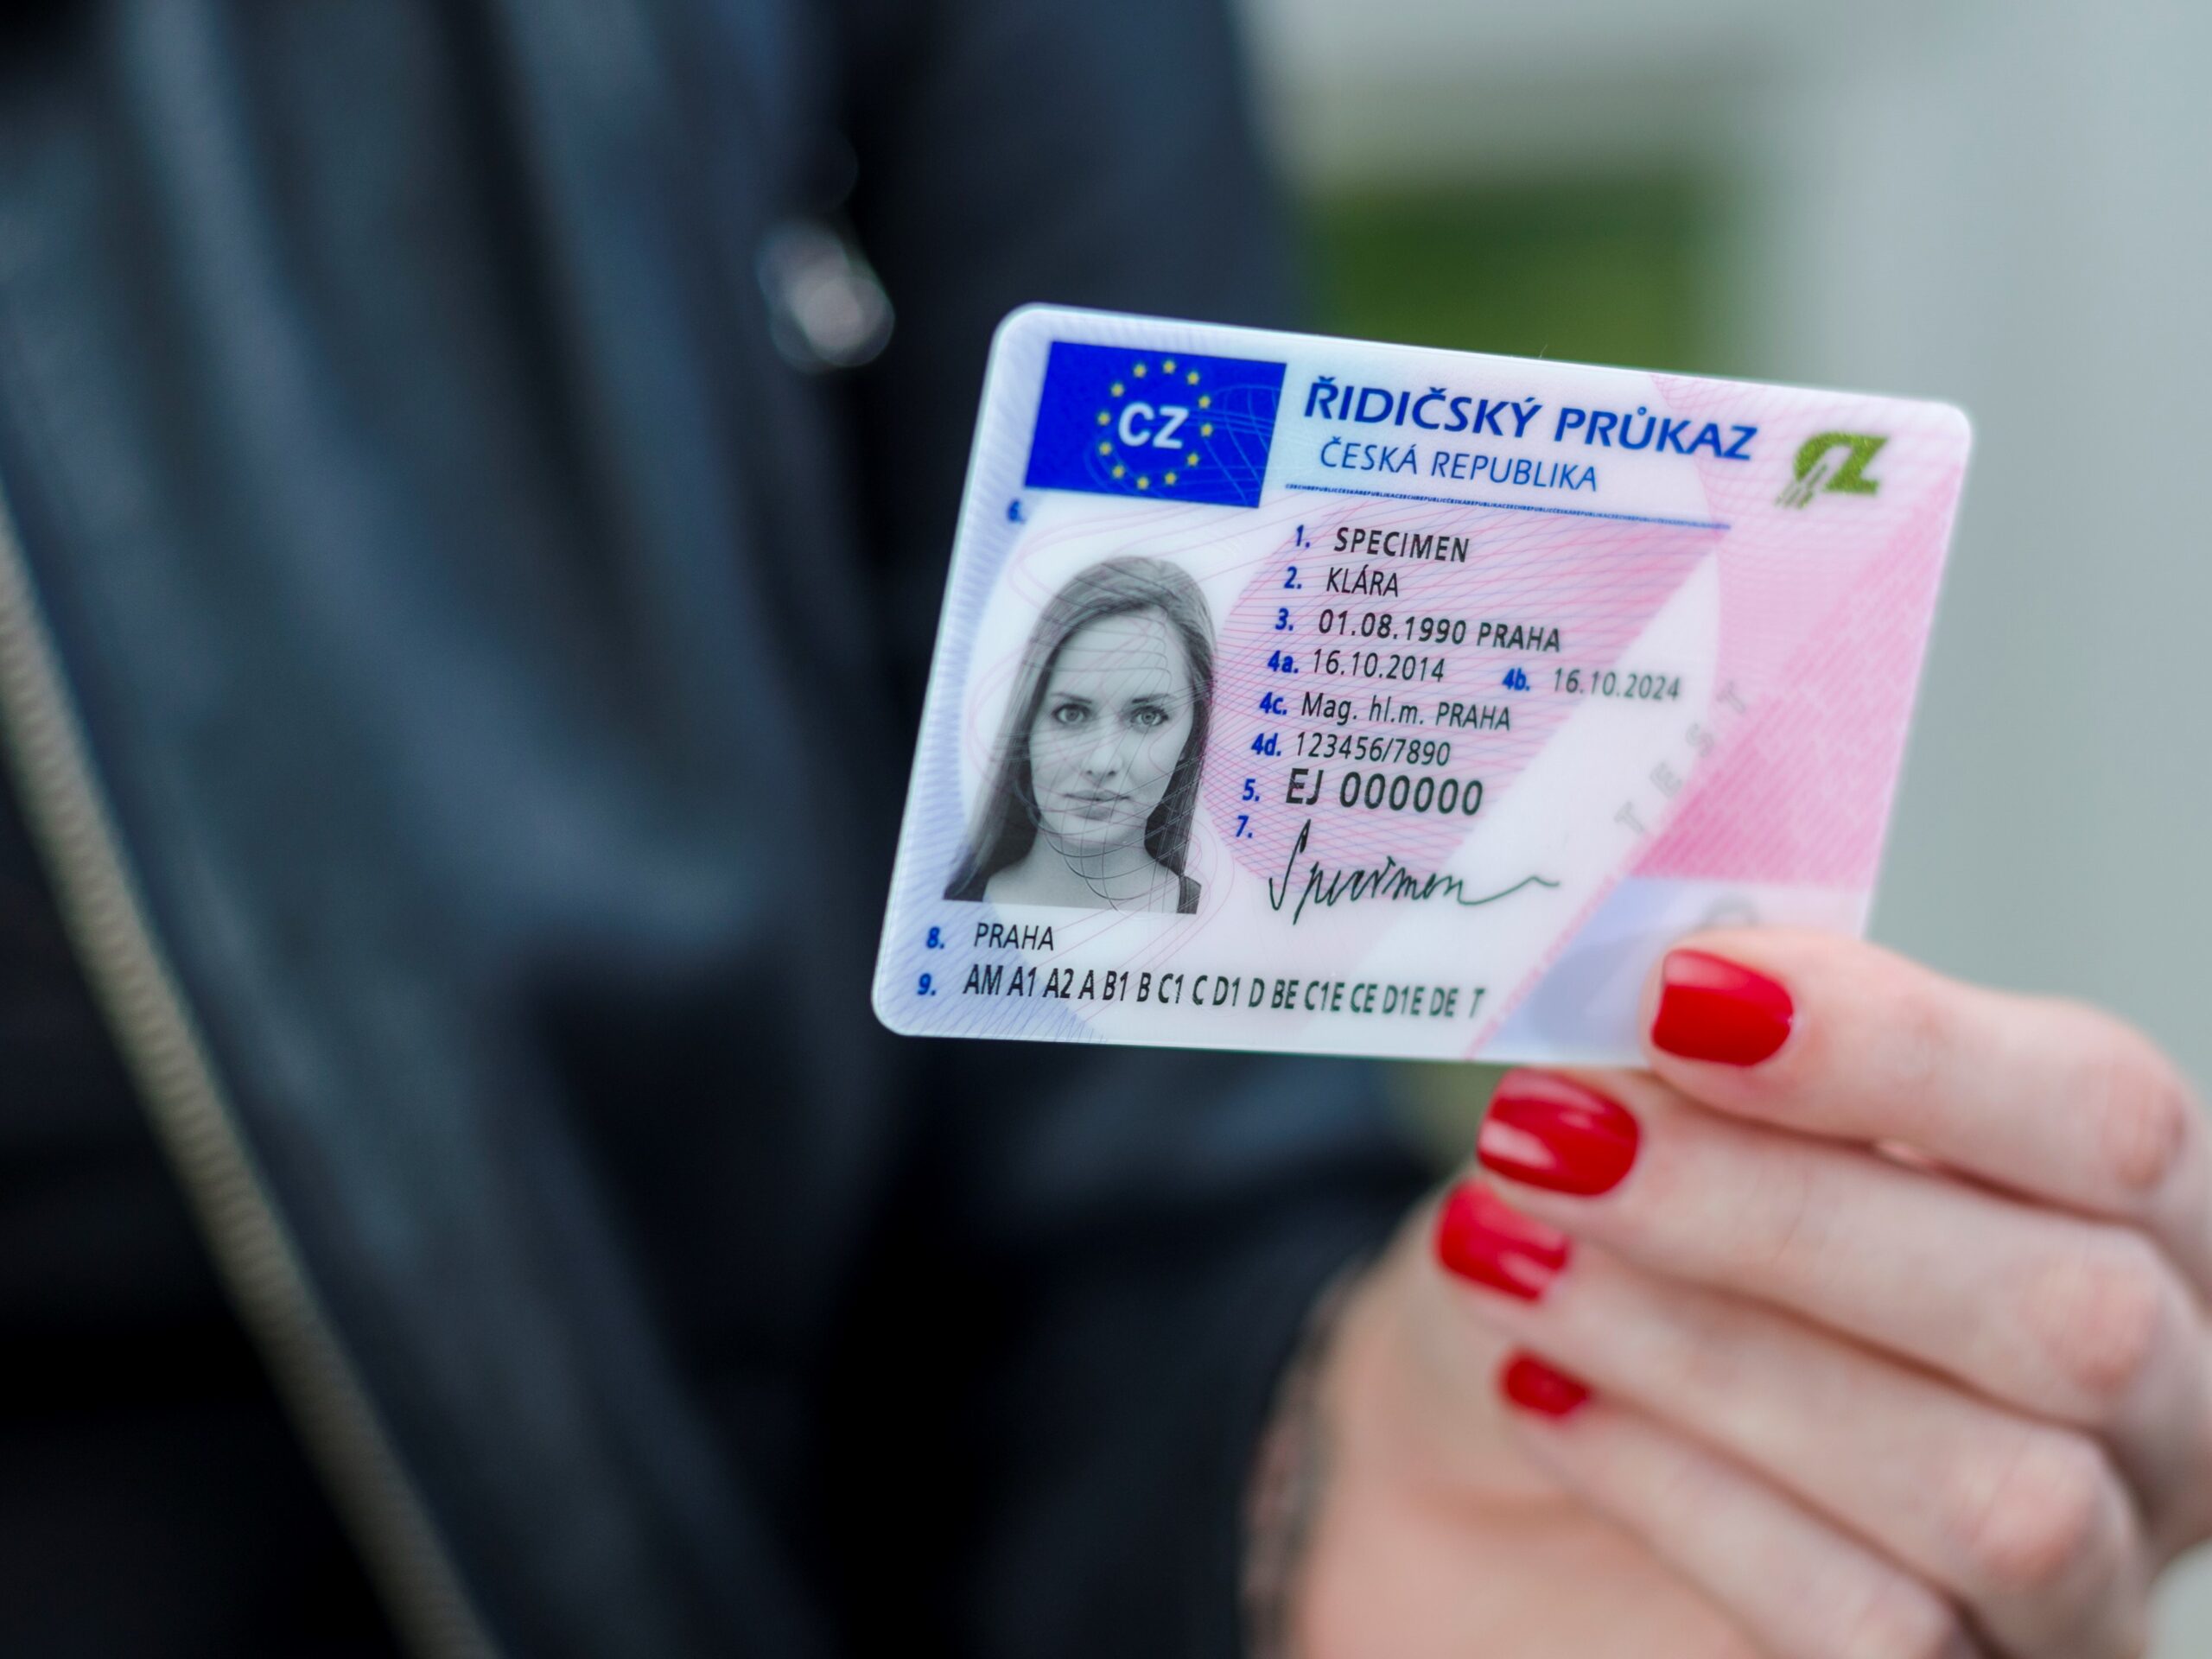 Чешское водительское удостоверение